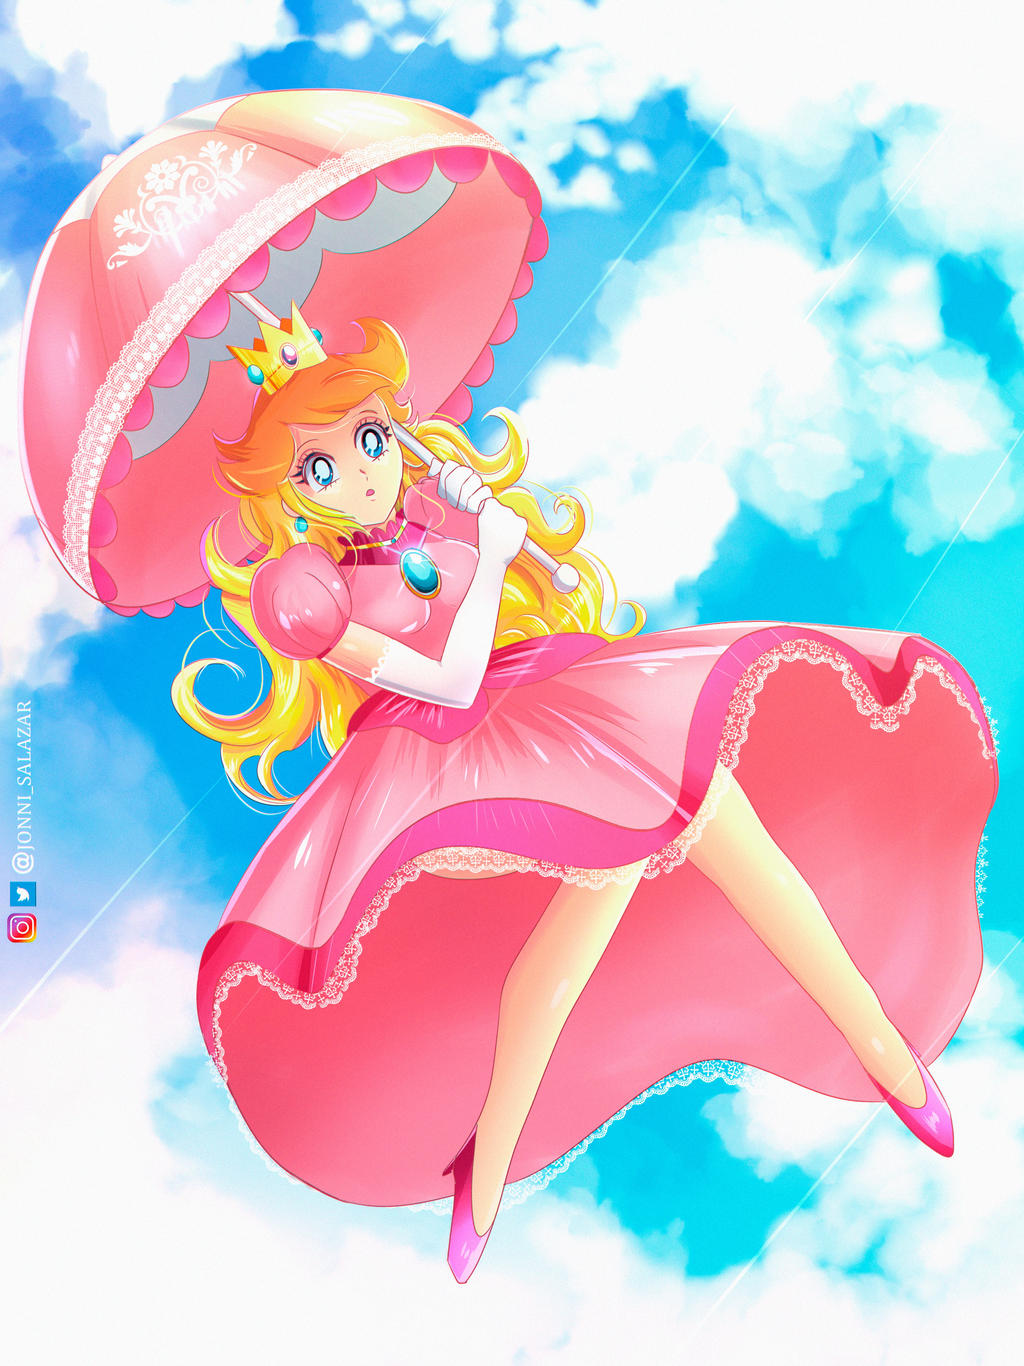 Princess Peach Fan Art by jonnisalazar on DeviantArt